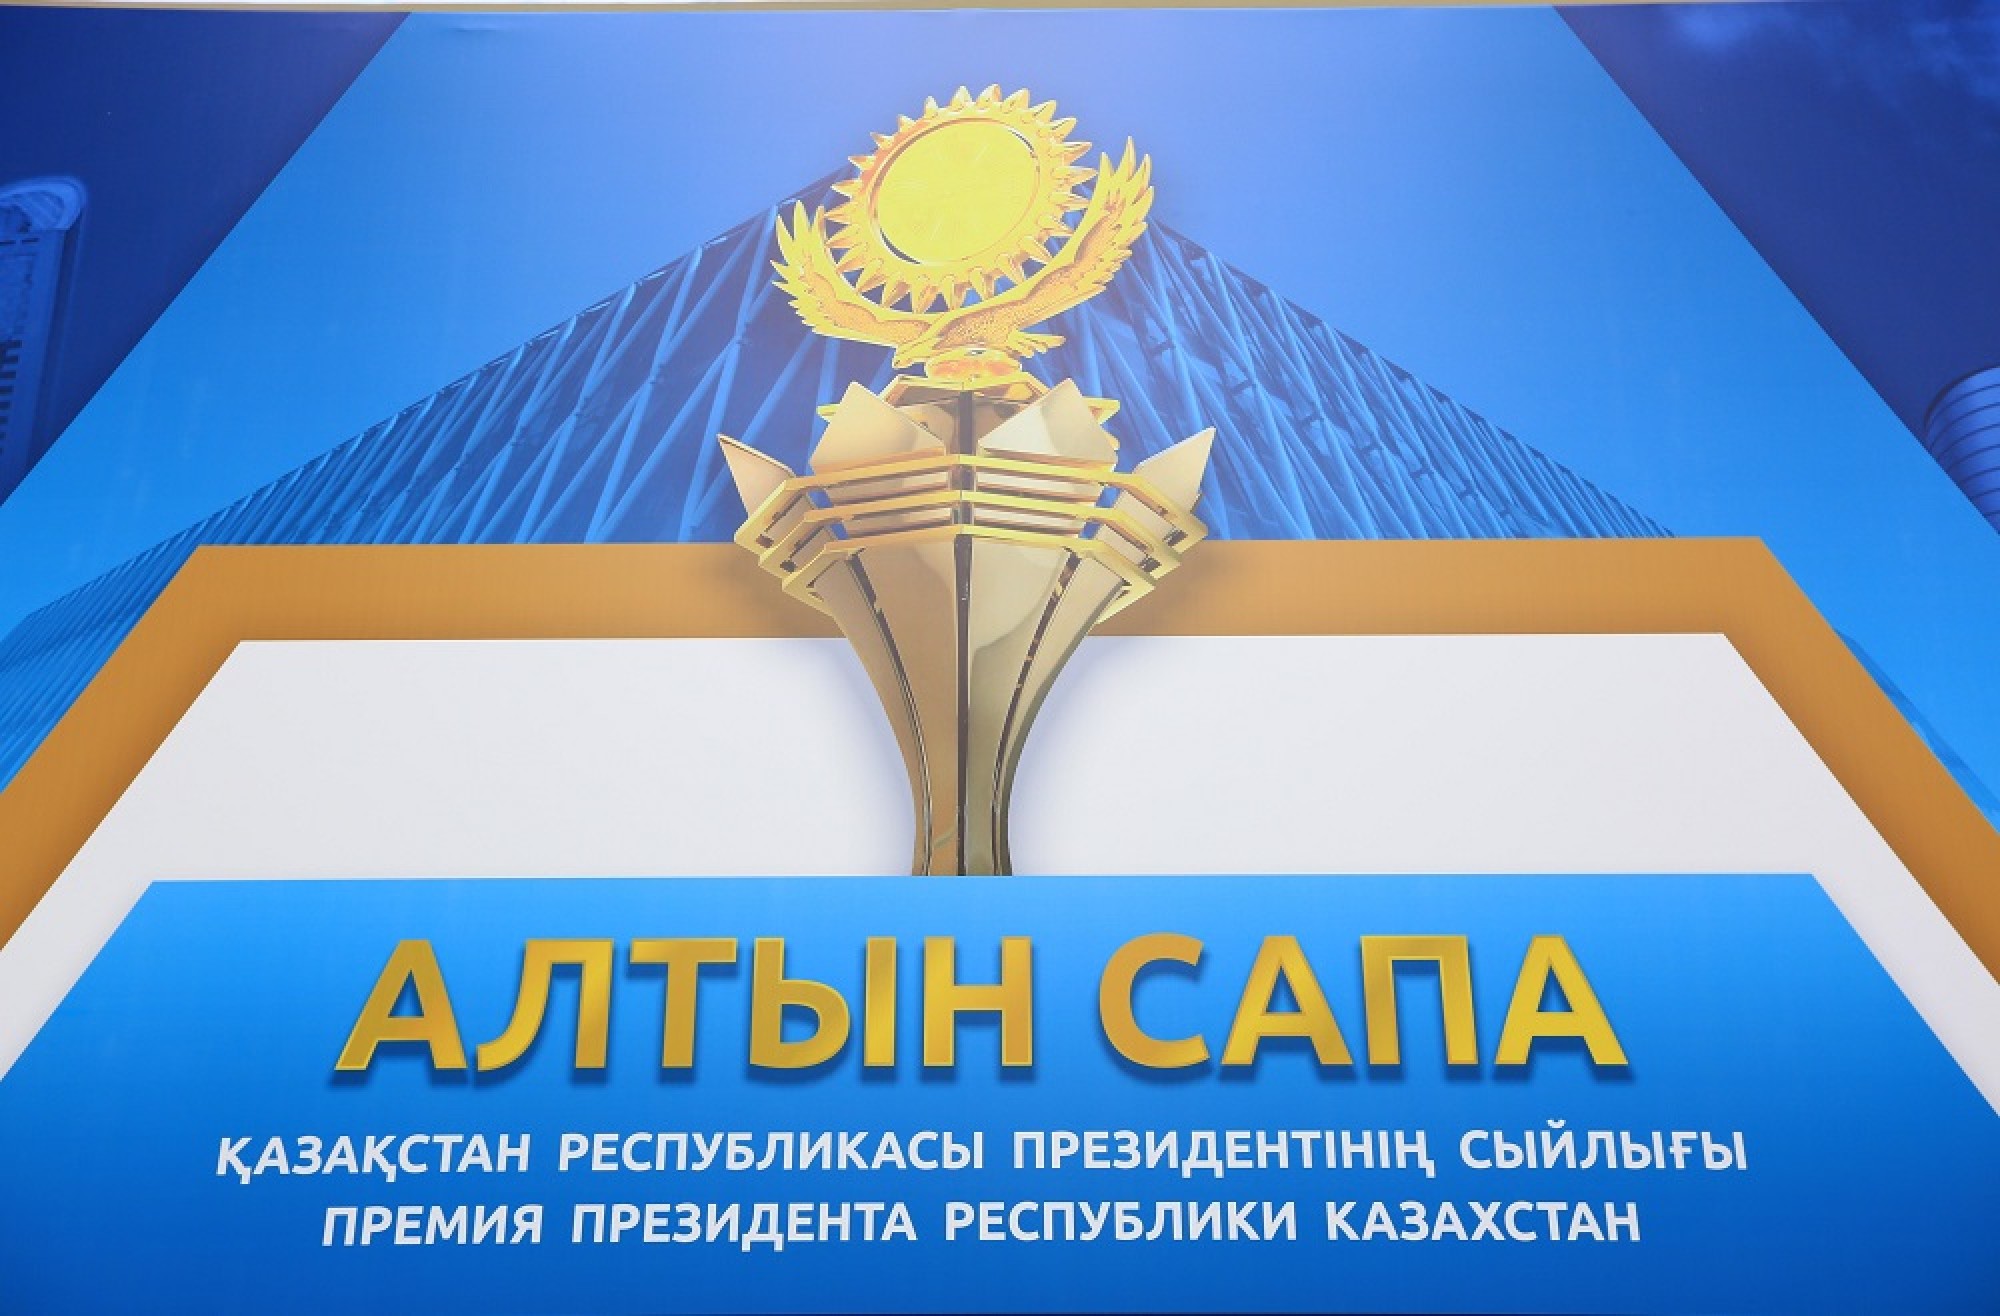 31 столичная компания подали заявку на конкурс "Алтын сапа"